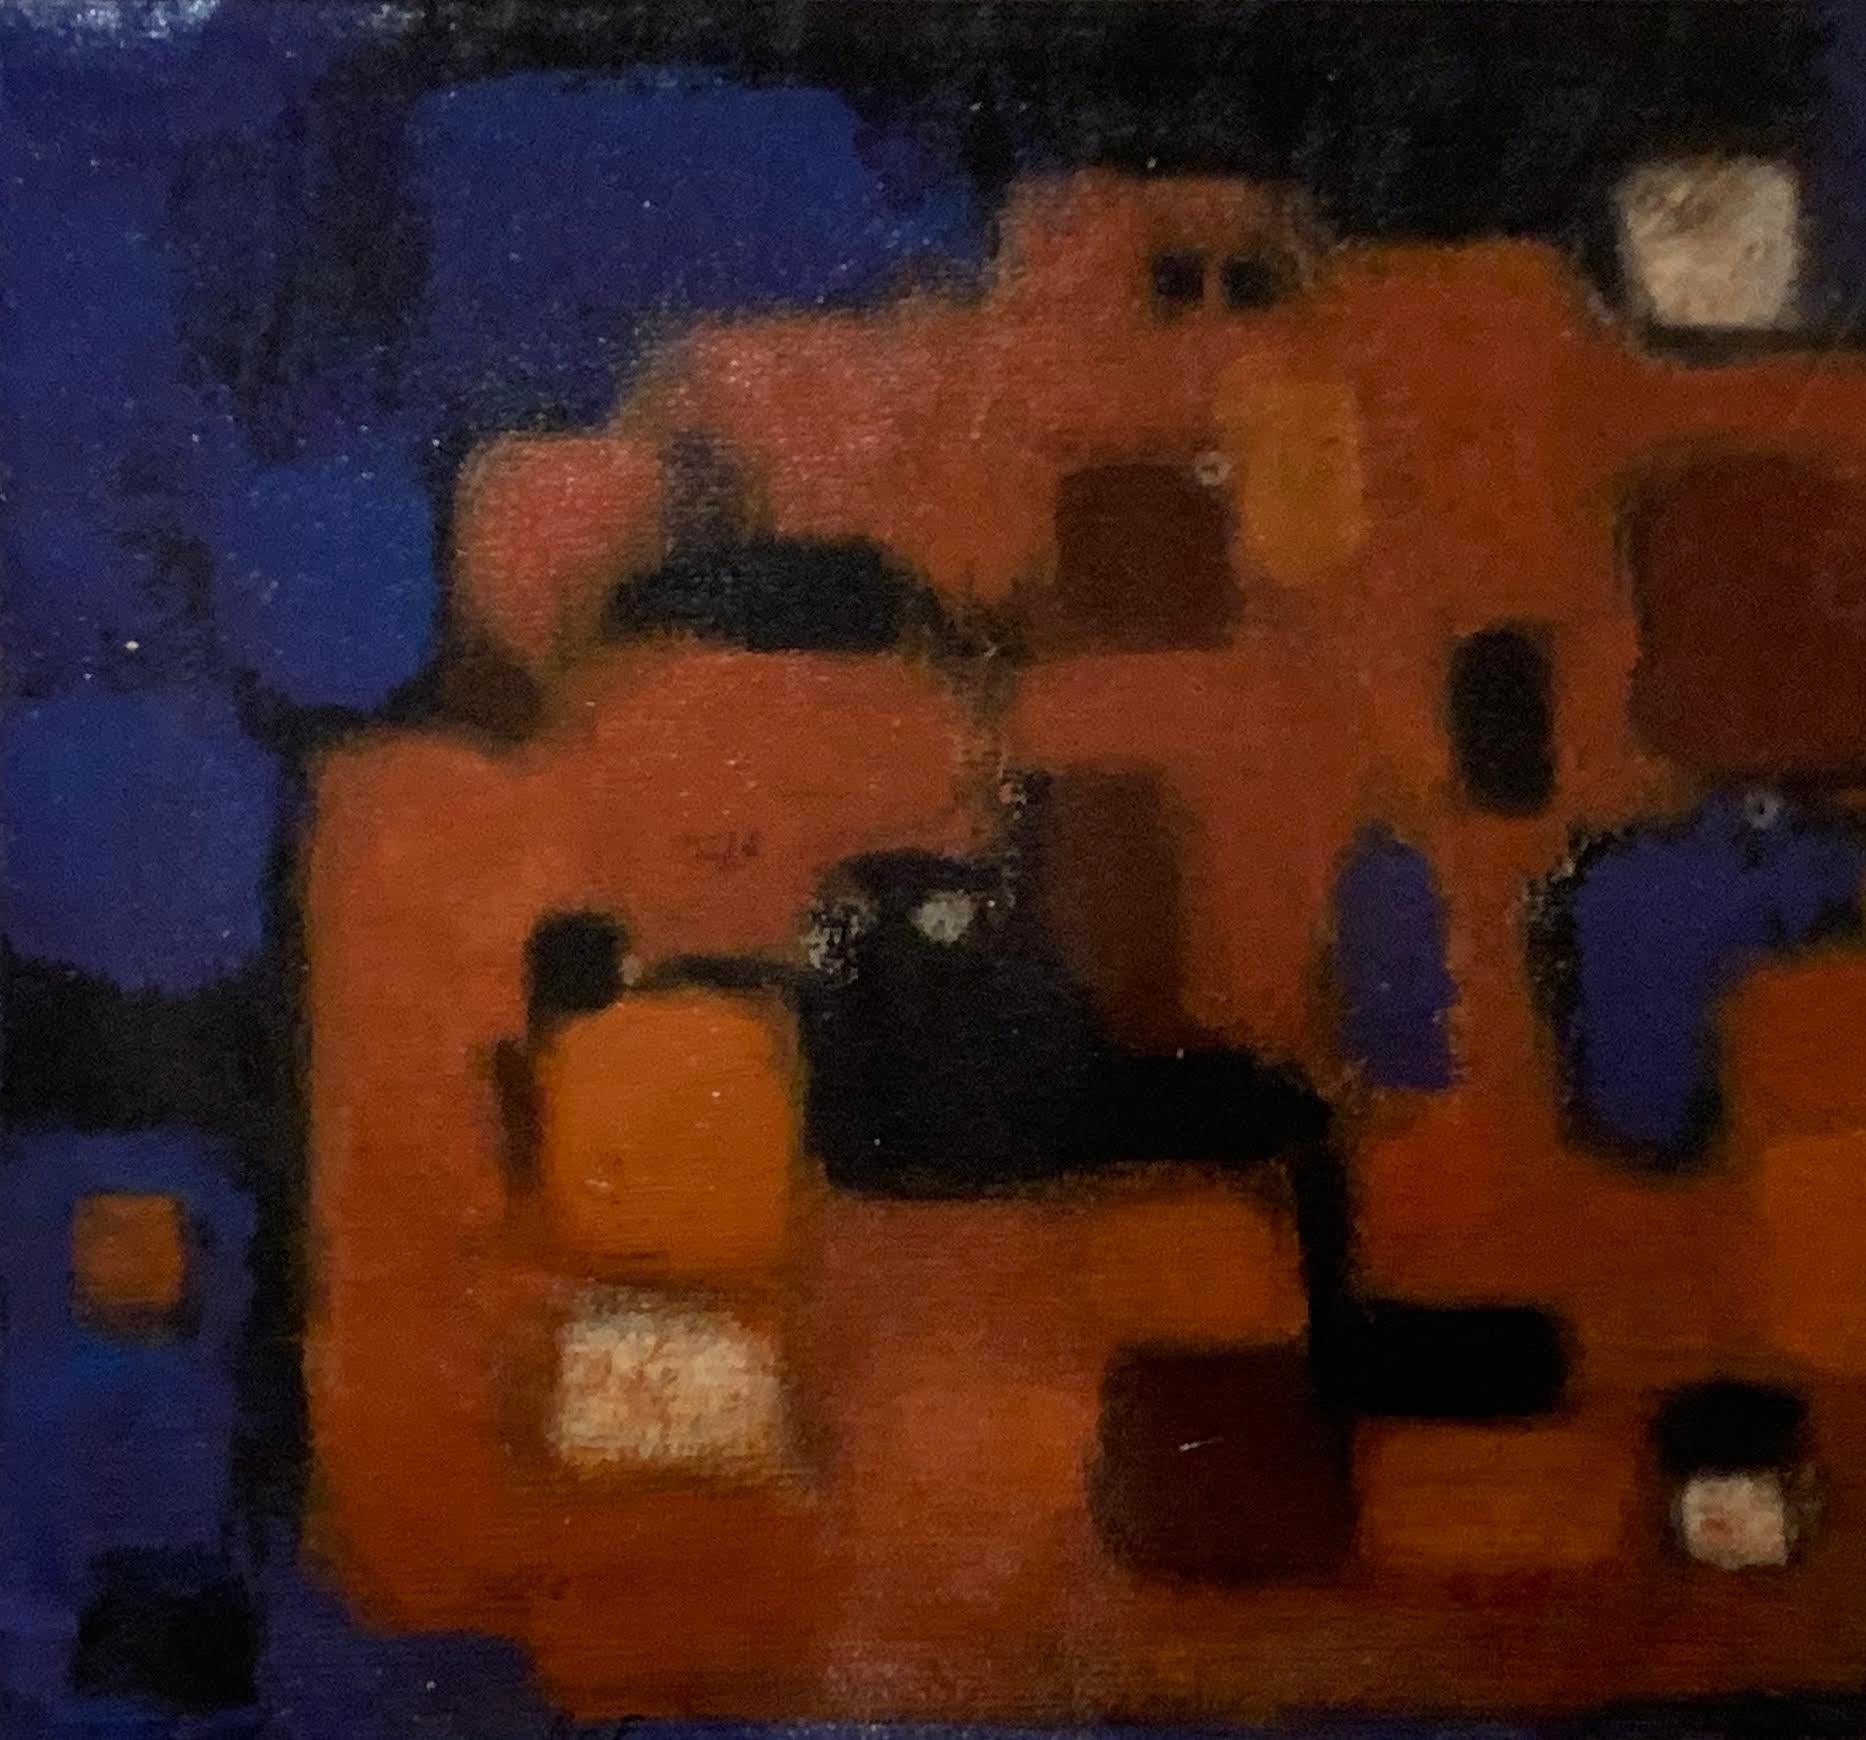 peinture acrylique abstraite allemande des années 1950 dans un cadre en bois de couleur naturelle.
La couleur dominante est l'orange avec le bleu cobalt, le noir et le vin.
L'artiste est inconnu.
Le tableau est encadré sans verre.